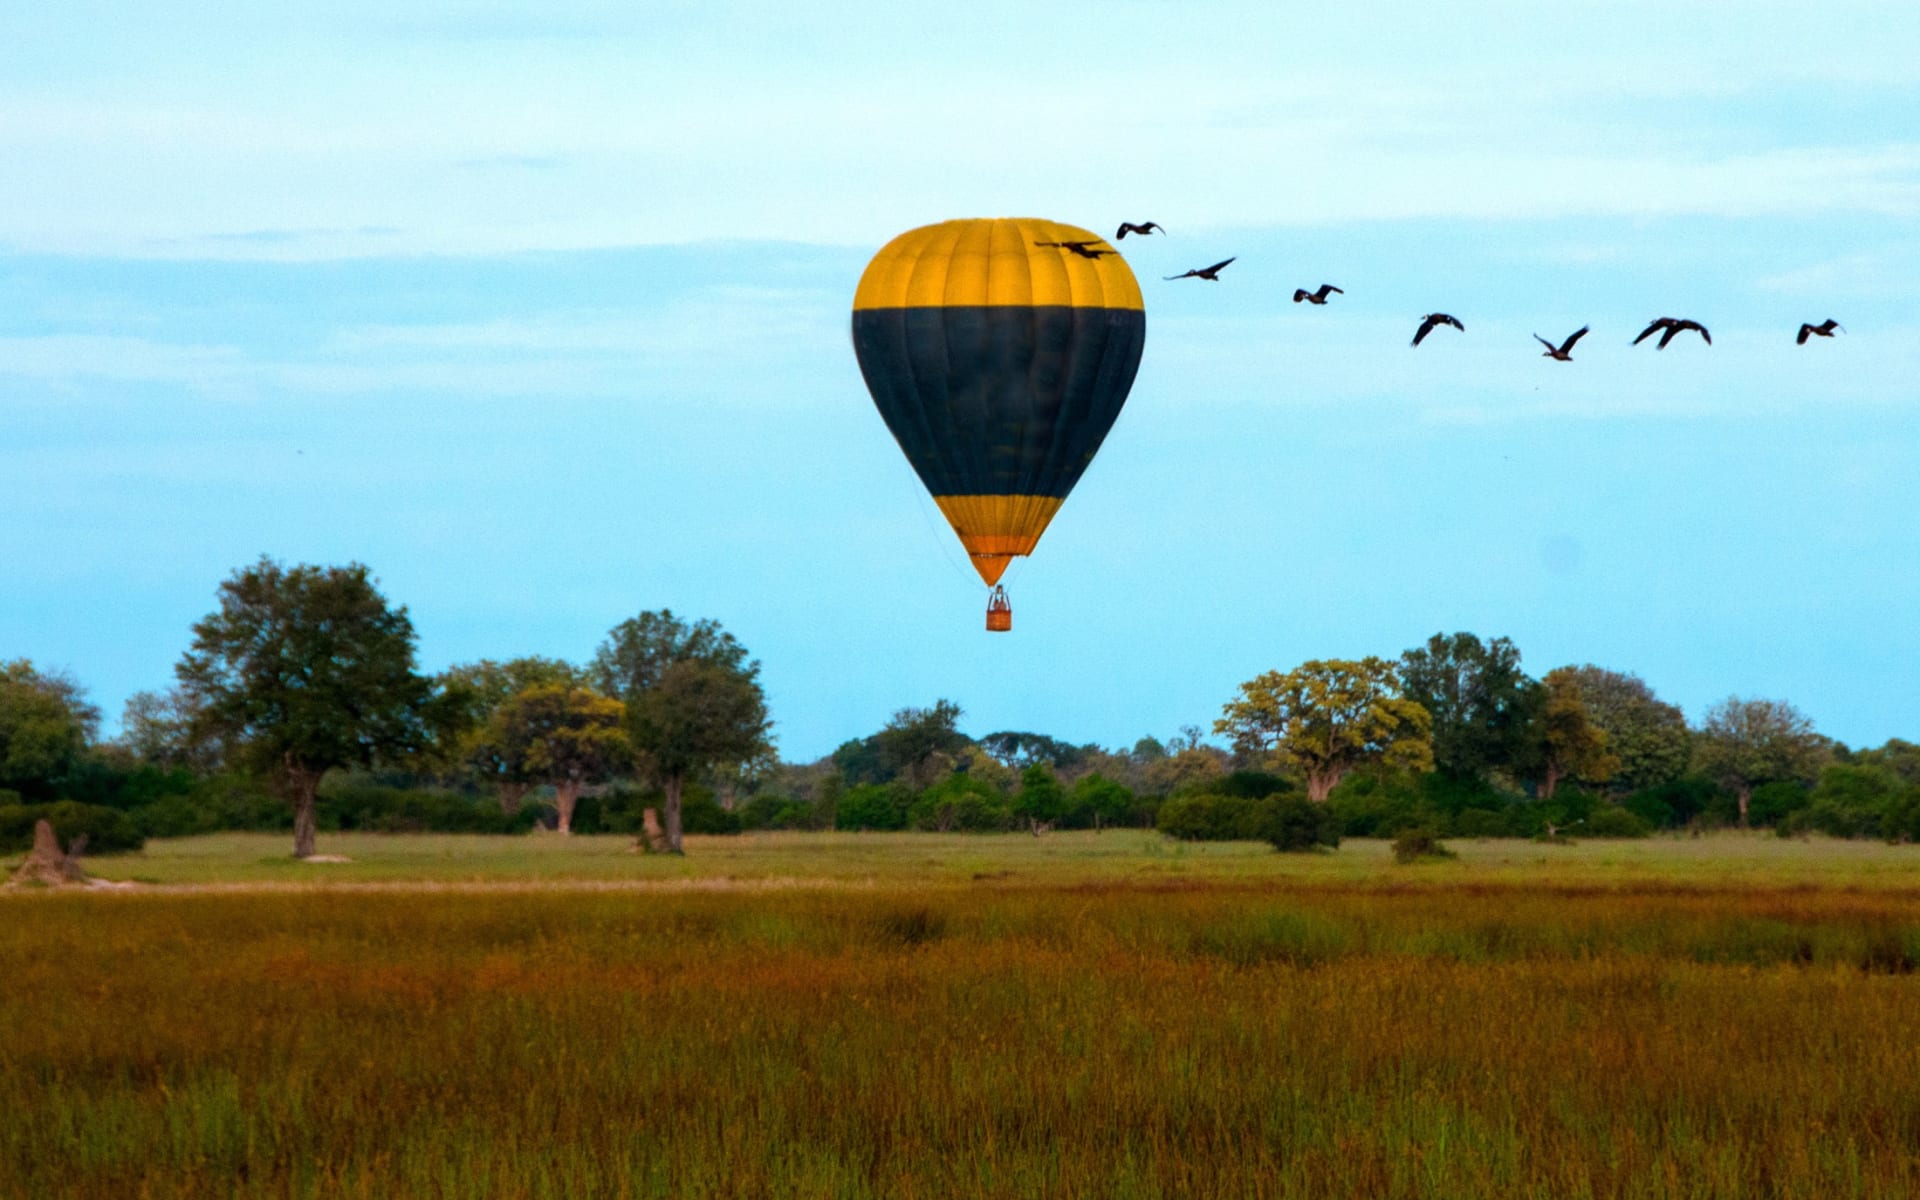 North_Island_Okavango_Ballooning_a13max-1